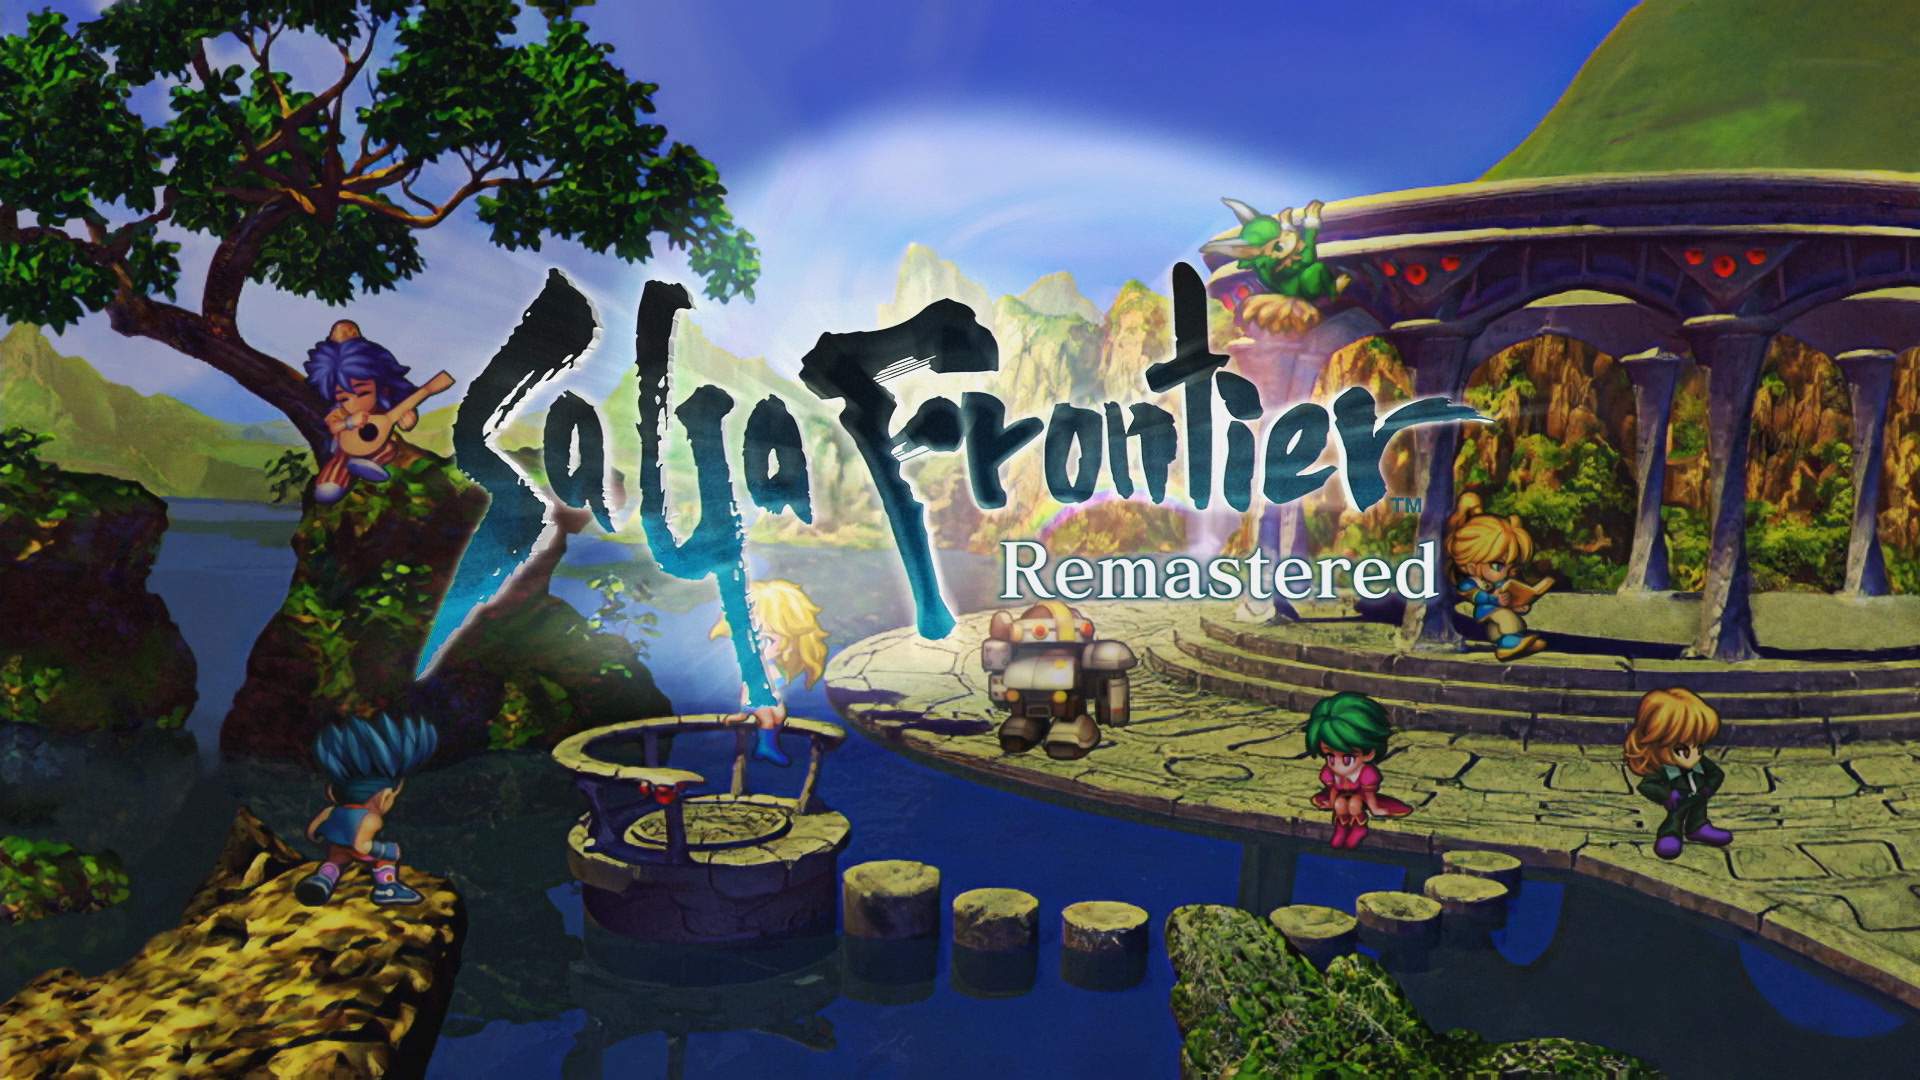 Todos os 8 protagonistas de SaGa Frontier Remastered em volta de um lago, com o logotipo do jogo no centro da imagem.